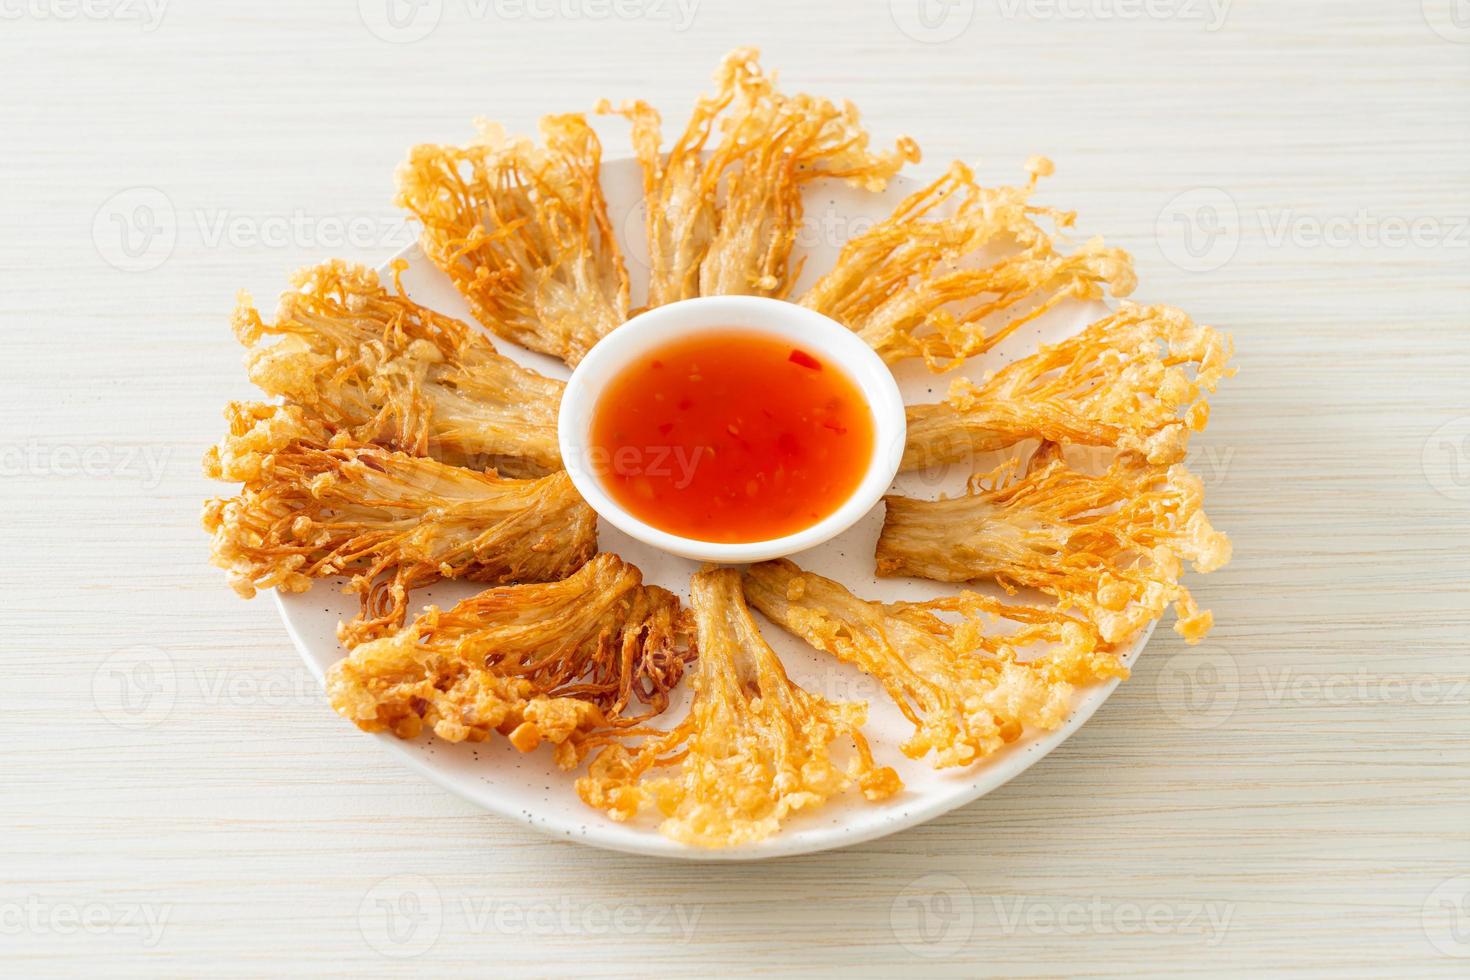 funghi enoki fritti con salsa piccante foto